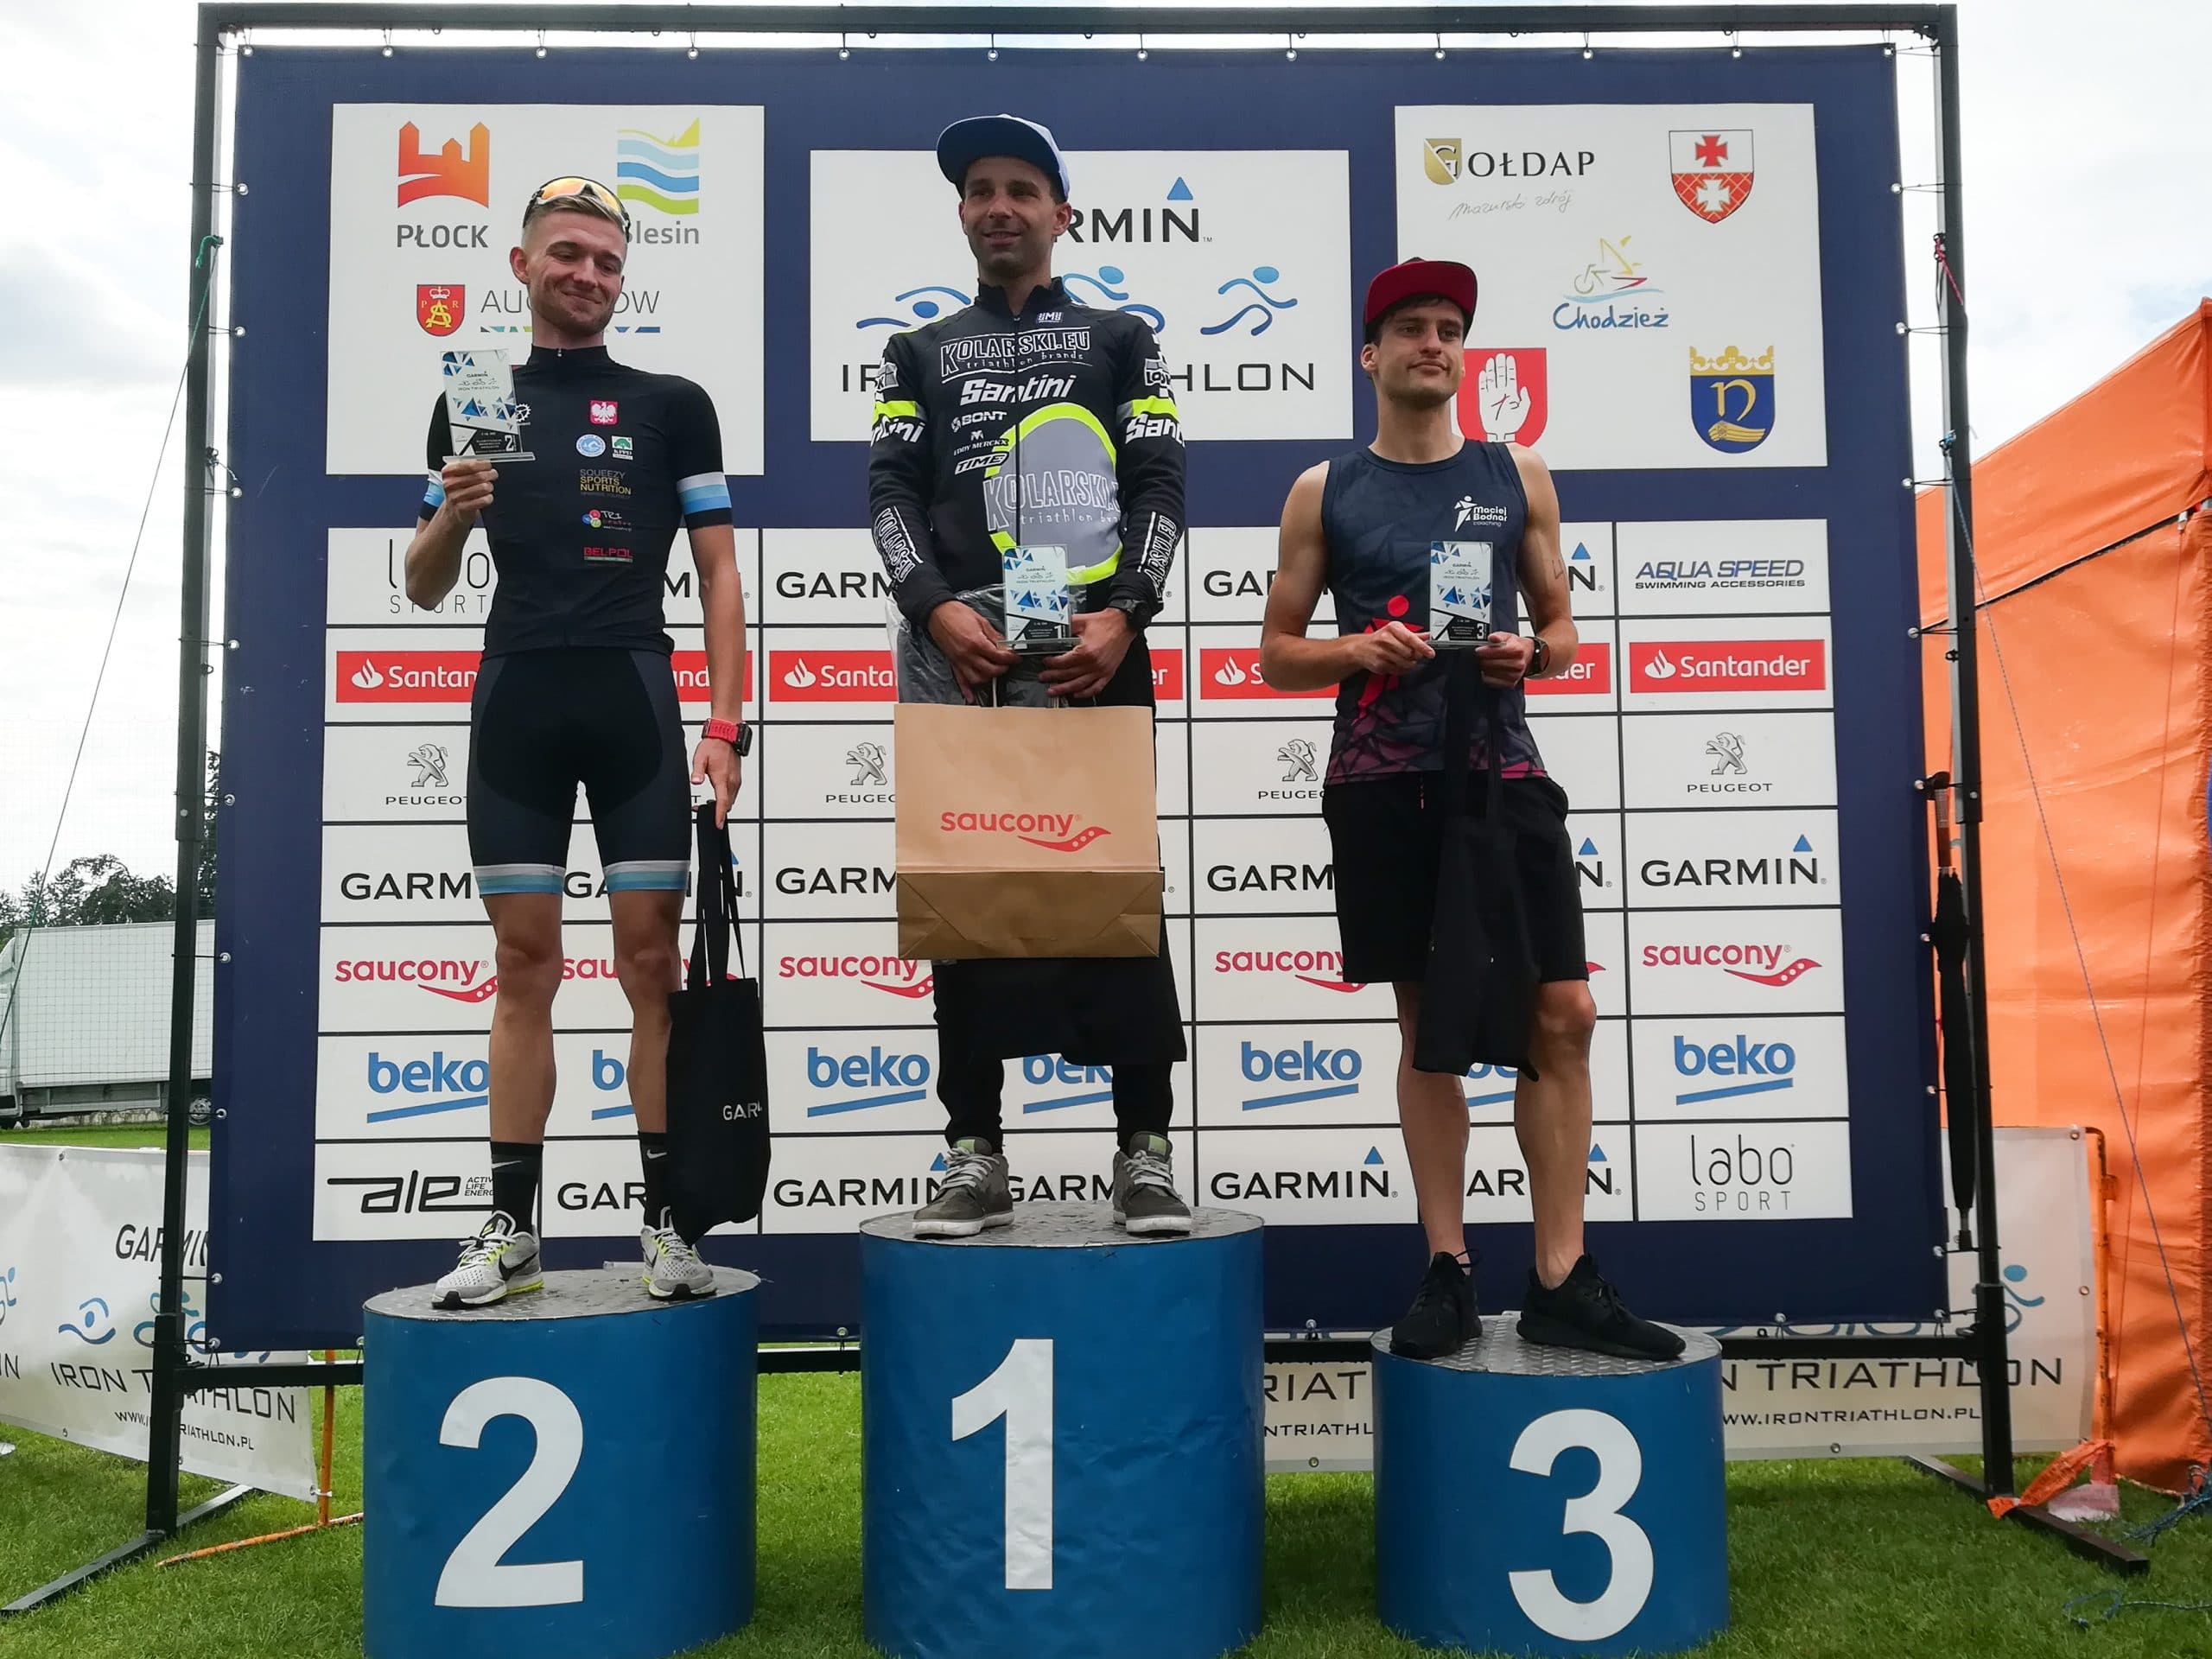 Zwycięzcy 1/4 IM Garmin Iron Triathlon Chodzież 2019